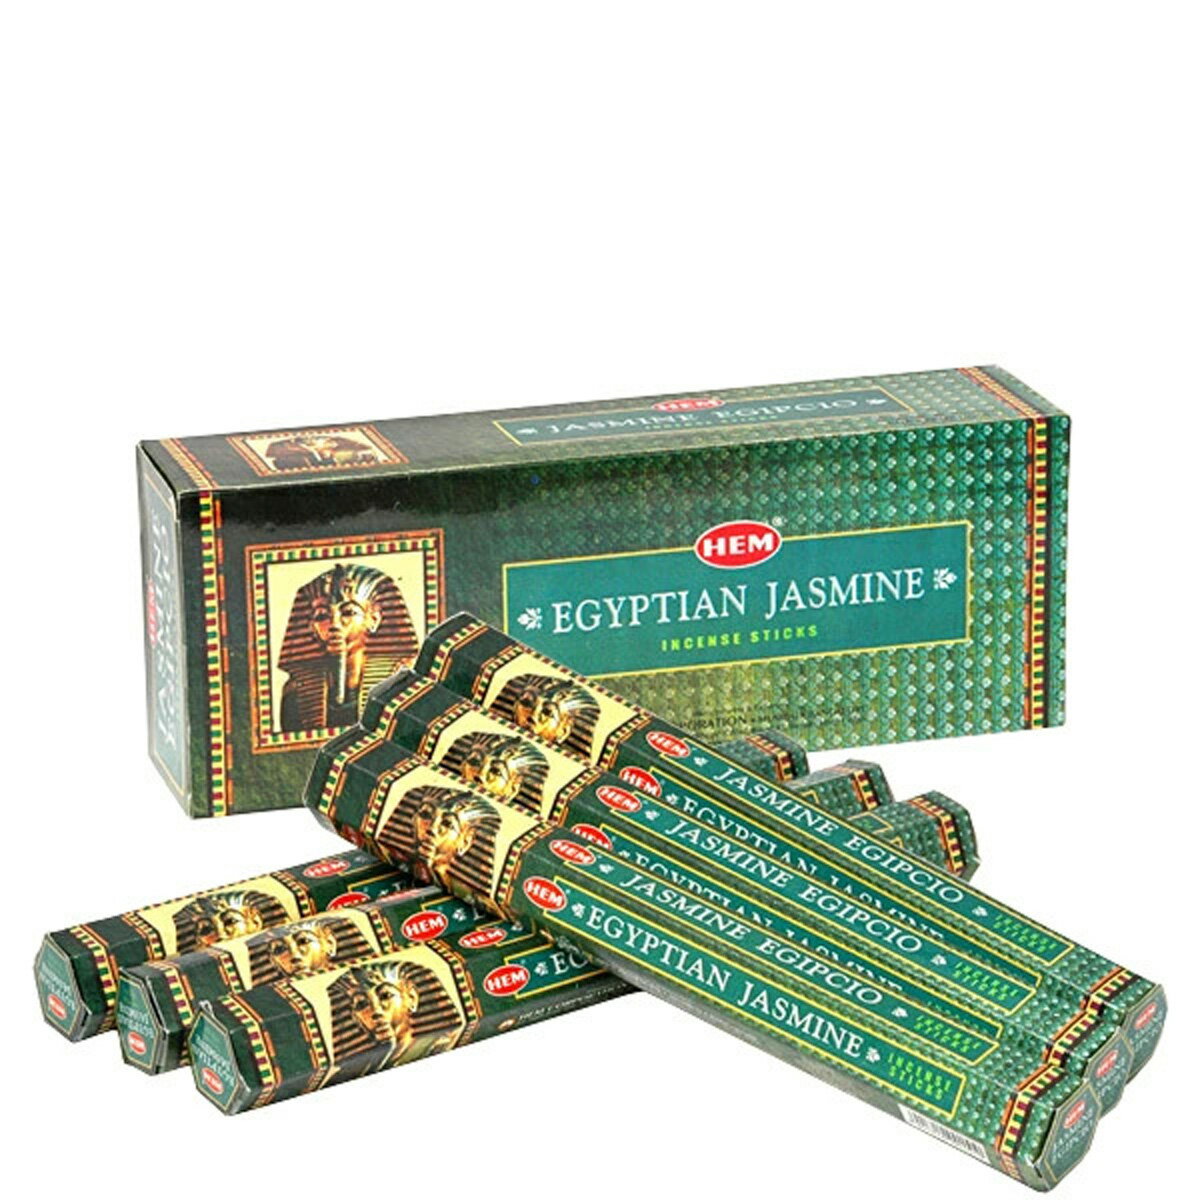 ヘム HEM スティック EGYPTIAN JASMINE エジプシャンジャスミン 1ケース 6箱入り 約120本 セット エコノミー